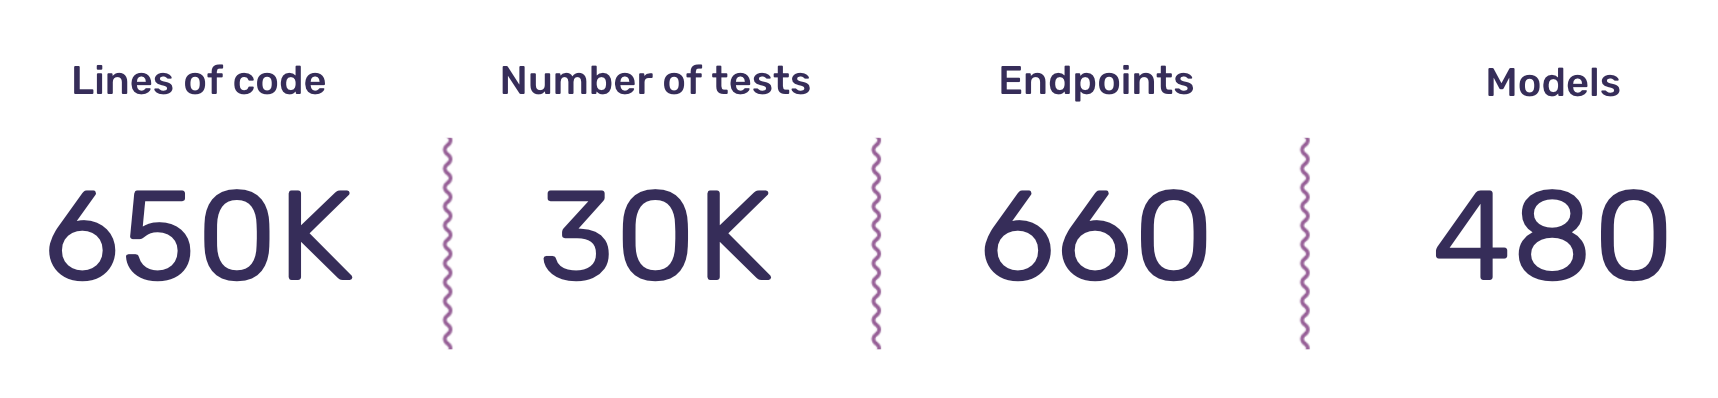 650k lines of code, 30k tests, 660 endpoints, 480 models